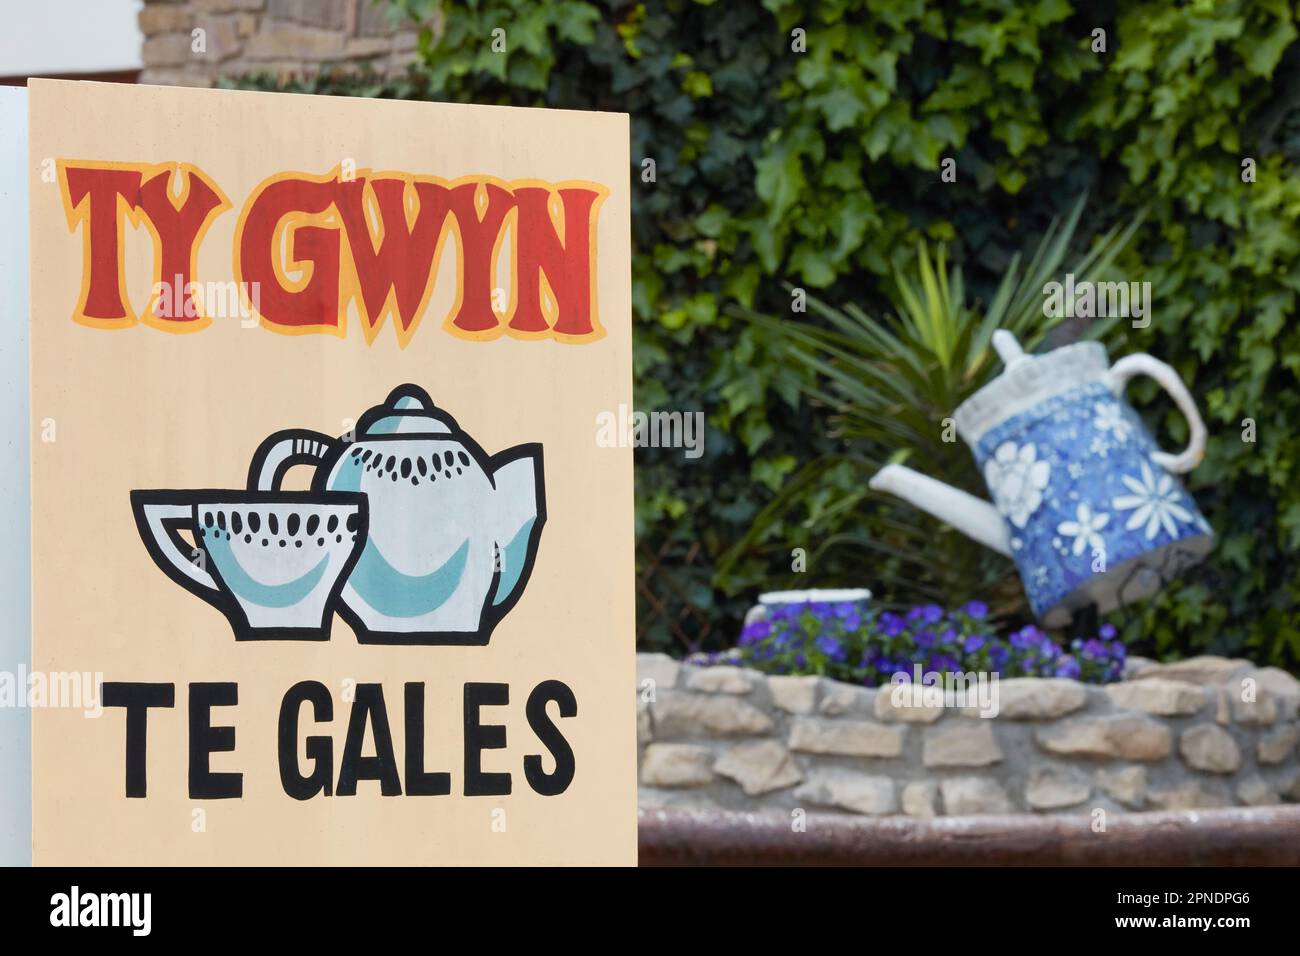 Le panneau à l'entrée de la maison de thé gallois 'Ty Gwinn' dans la ville de Gaiman, Chubut, Argentine. Banque D'Images